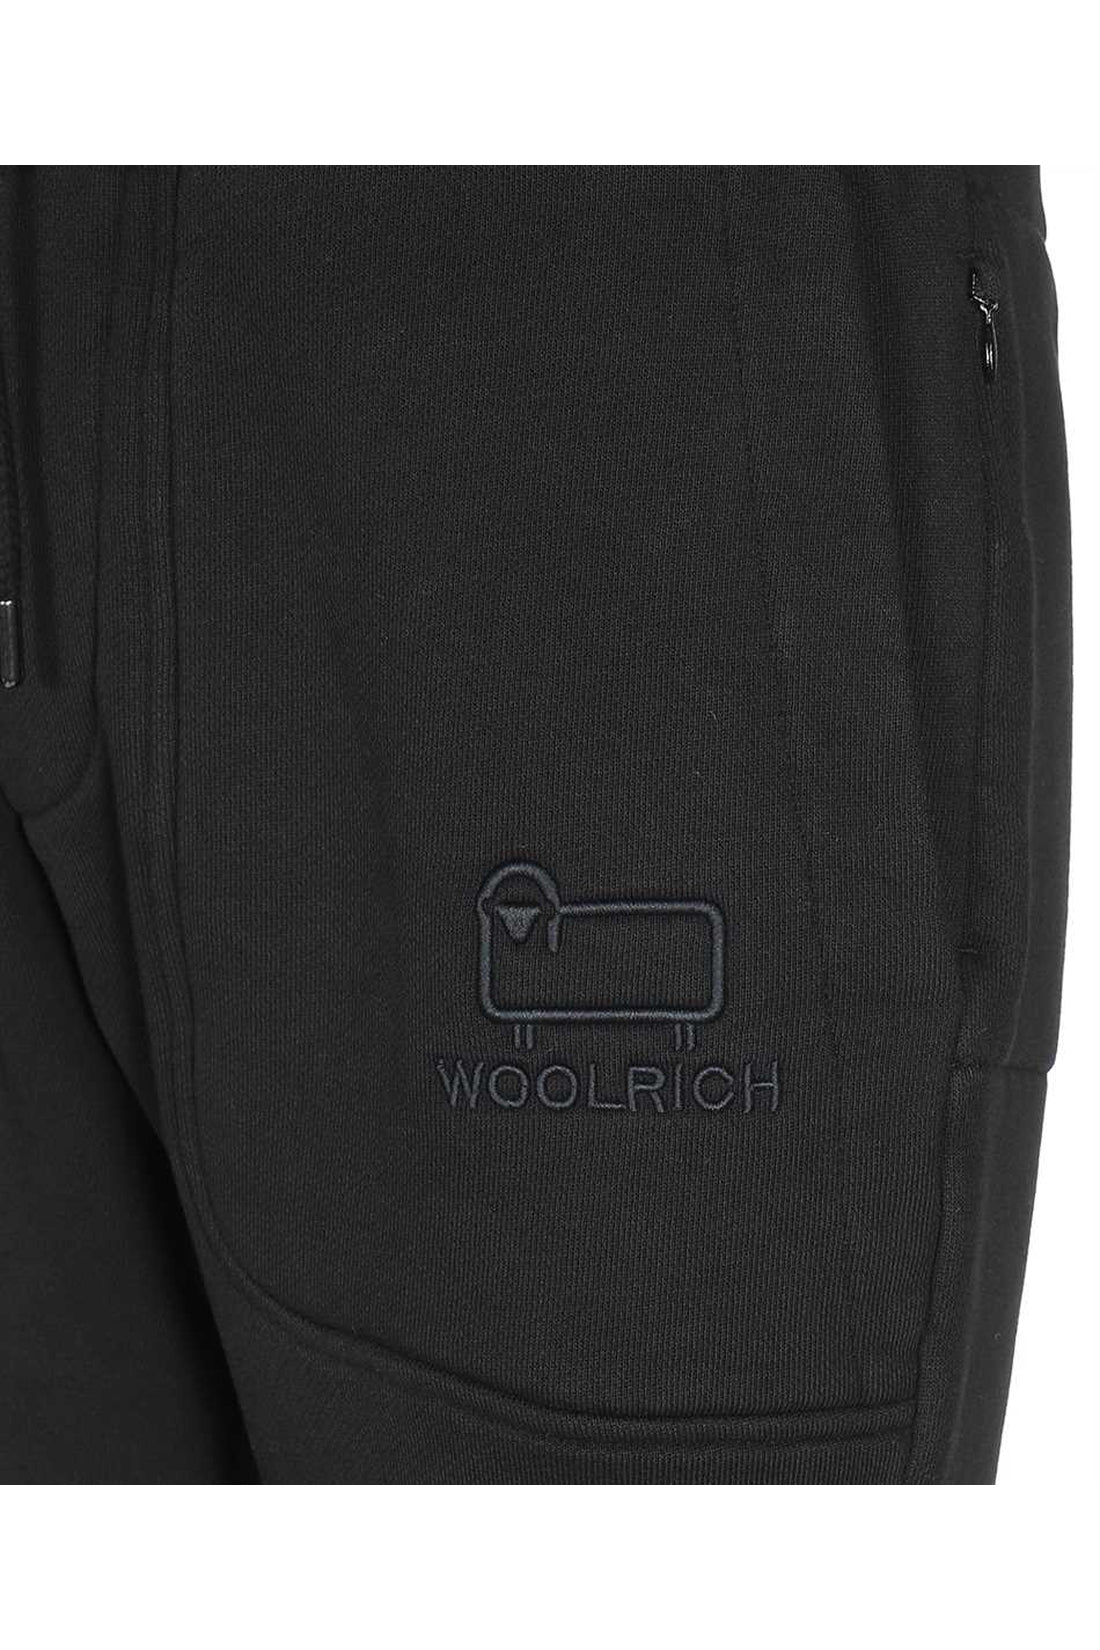 Woolrich-OUTLET-SALE-Cotton trousers-ARCHIVIST